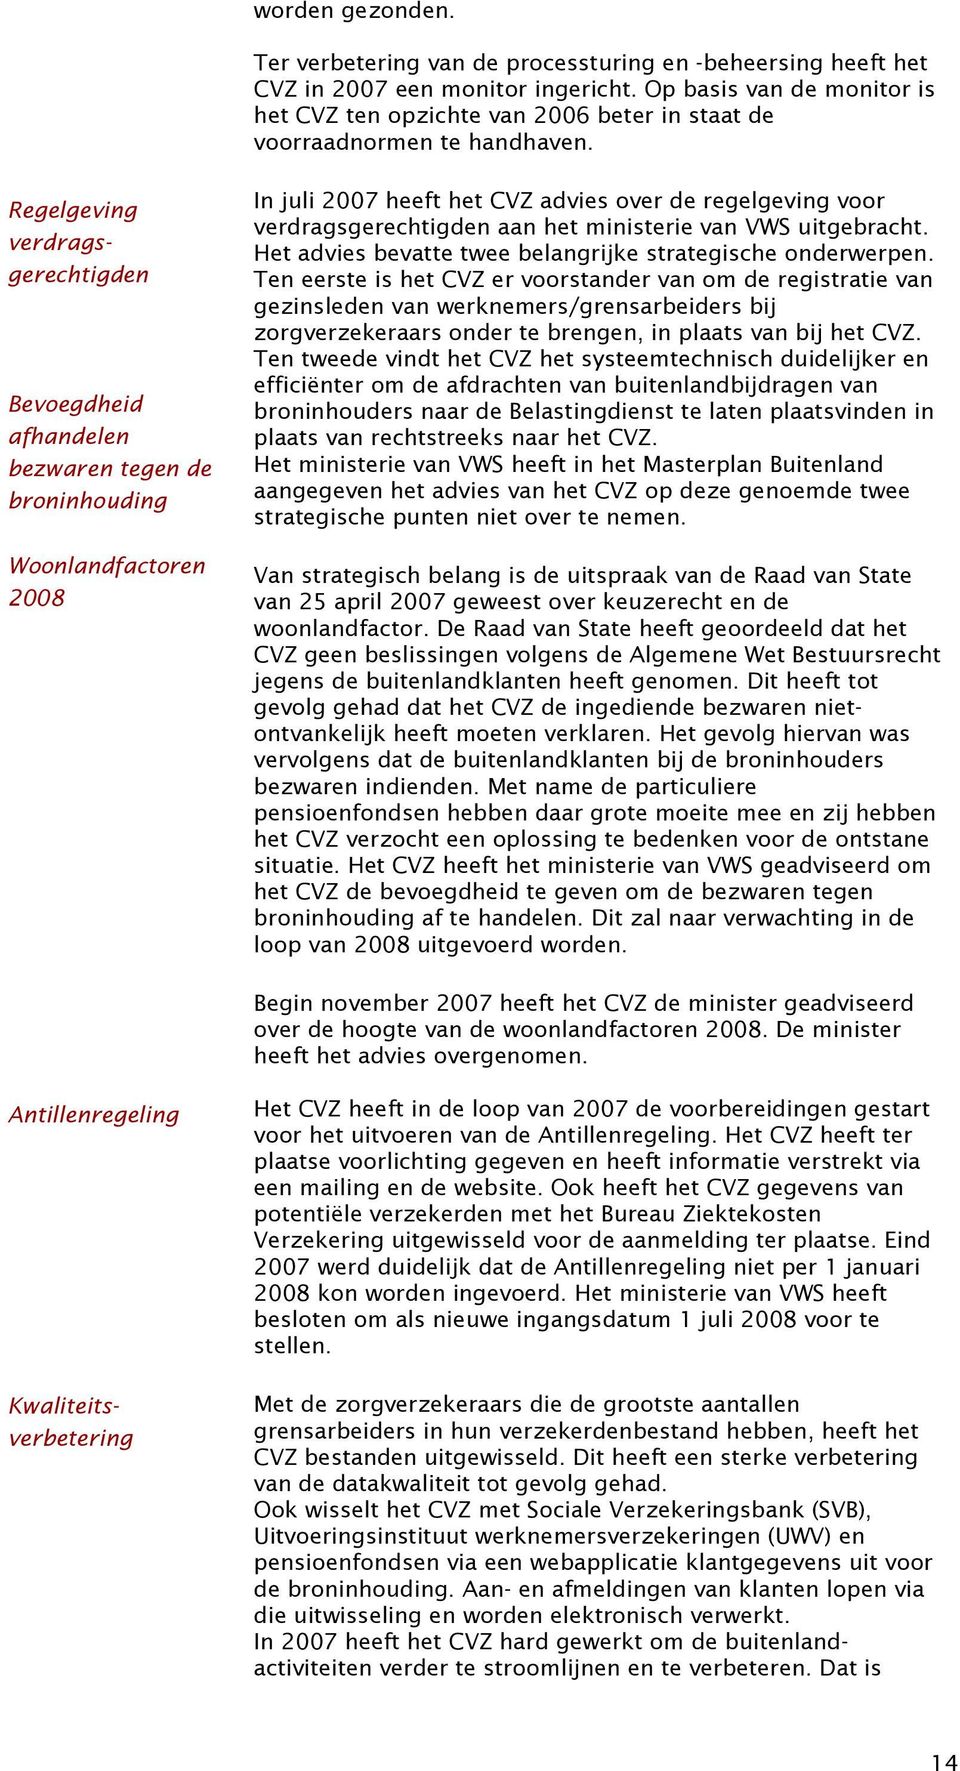 Bevoegdheid afhandelen bezwaren tegen de broninhouding Woonlandfactoren 2008 In juli 2007 heeft het CVZ advies over de regelgeving voor verdragsgerechtigden aan het ministerie van VWS uitgebracht.